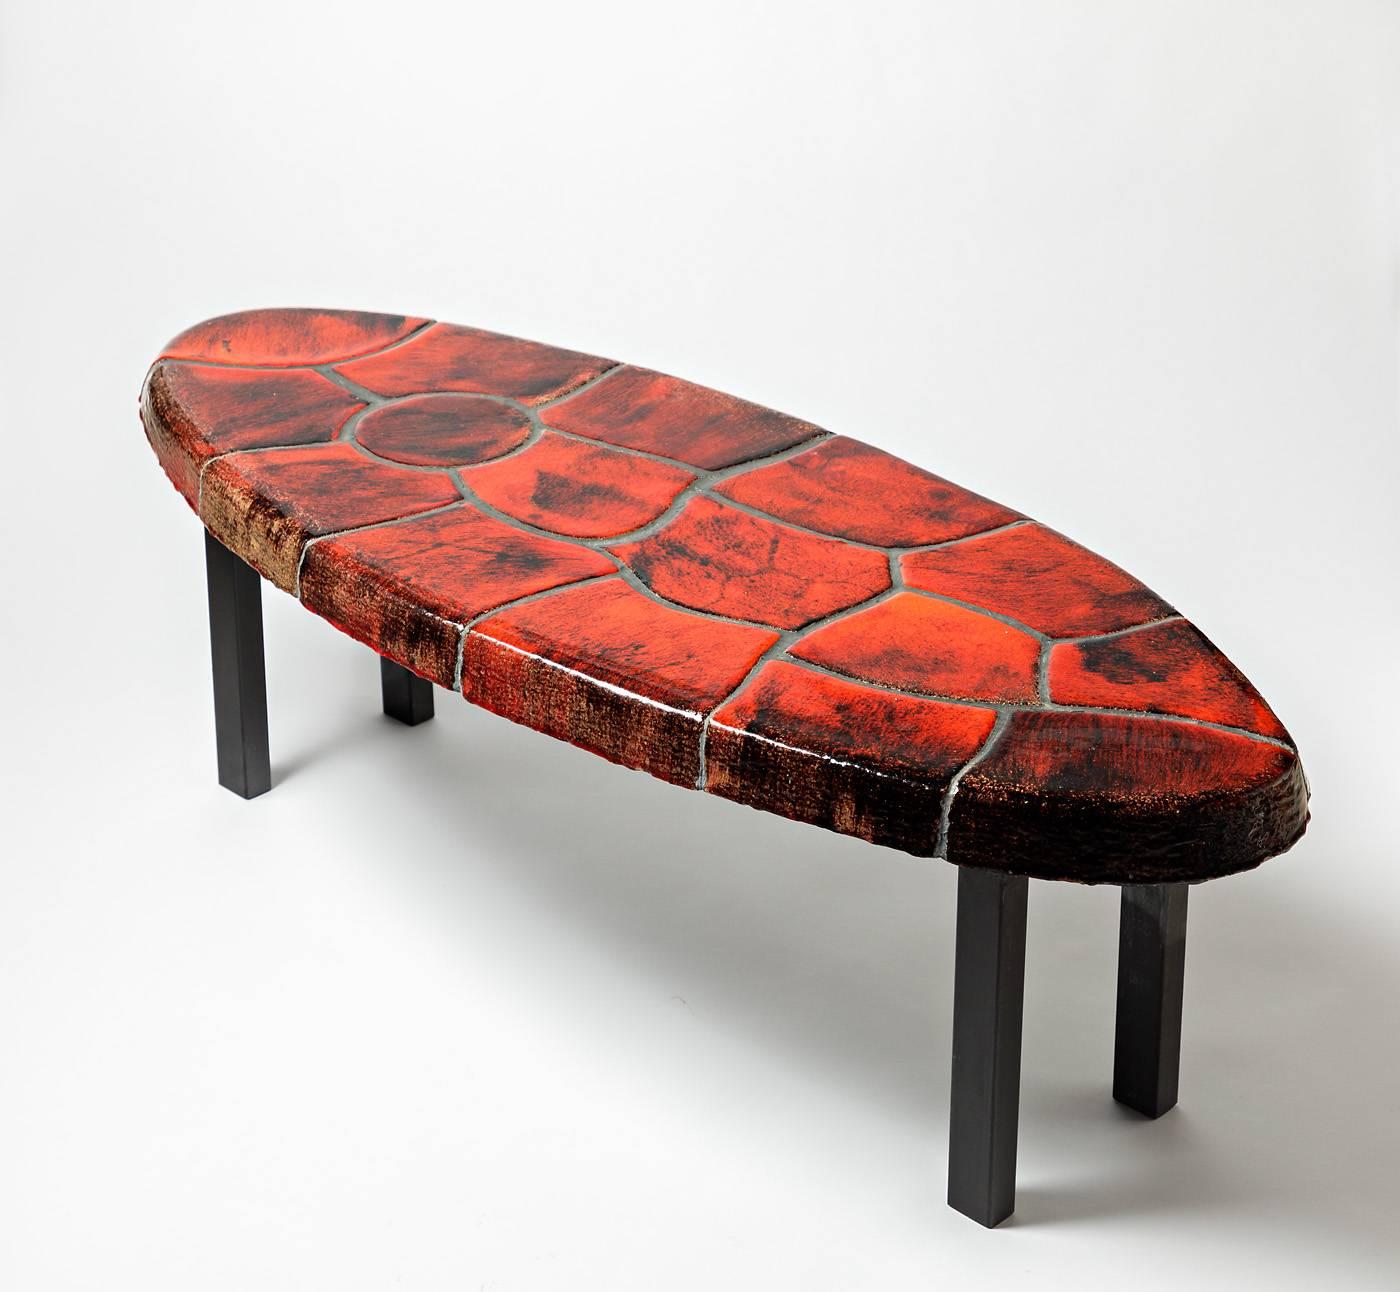 Exceptionnelle table basse en céramique

Production française, vers 1970

Extraordinaire glaçure rouge de la céramique et pieds en métal noirci

Dimensions : 36 x 110 x 43cm.